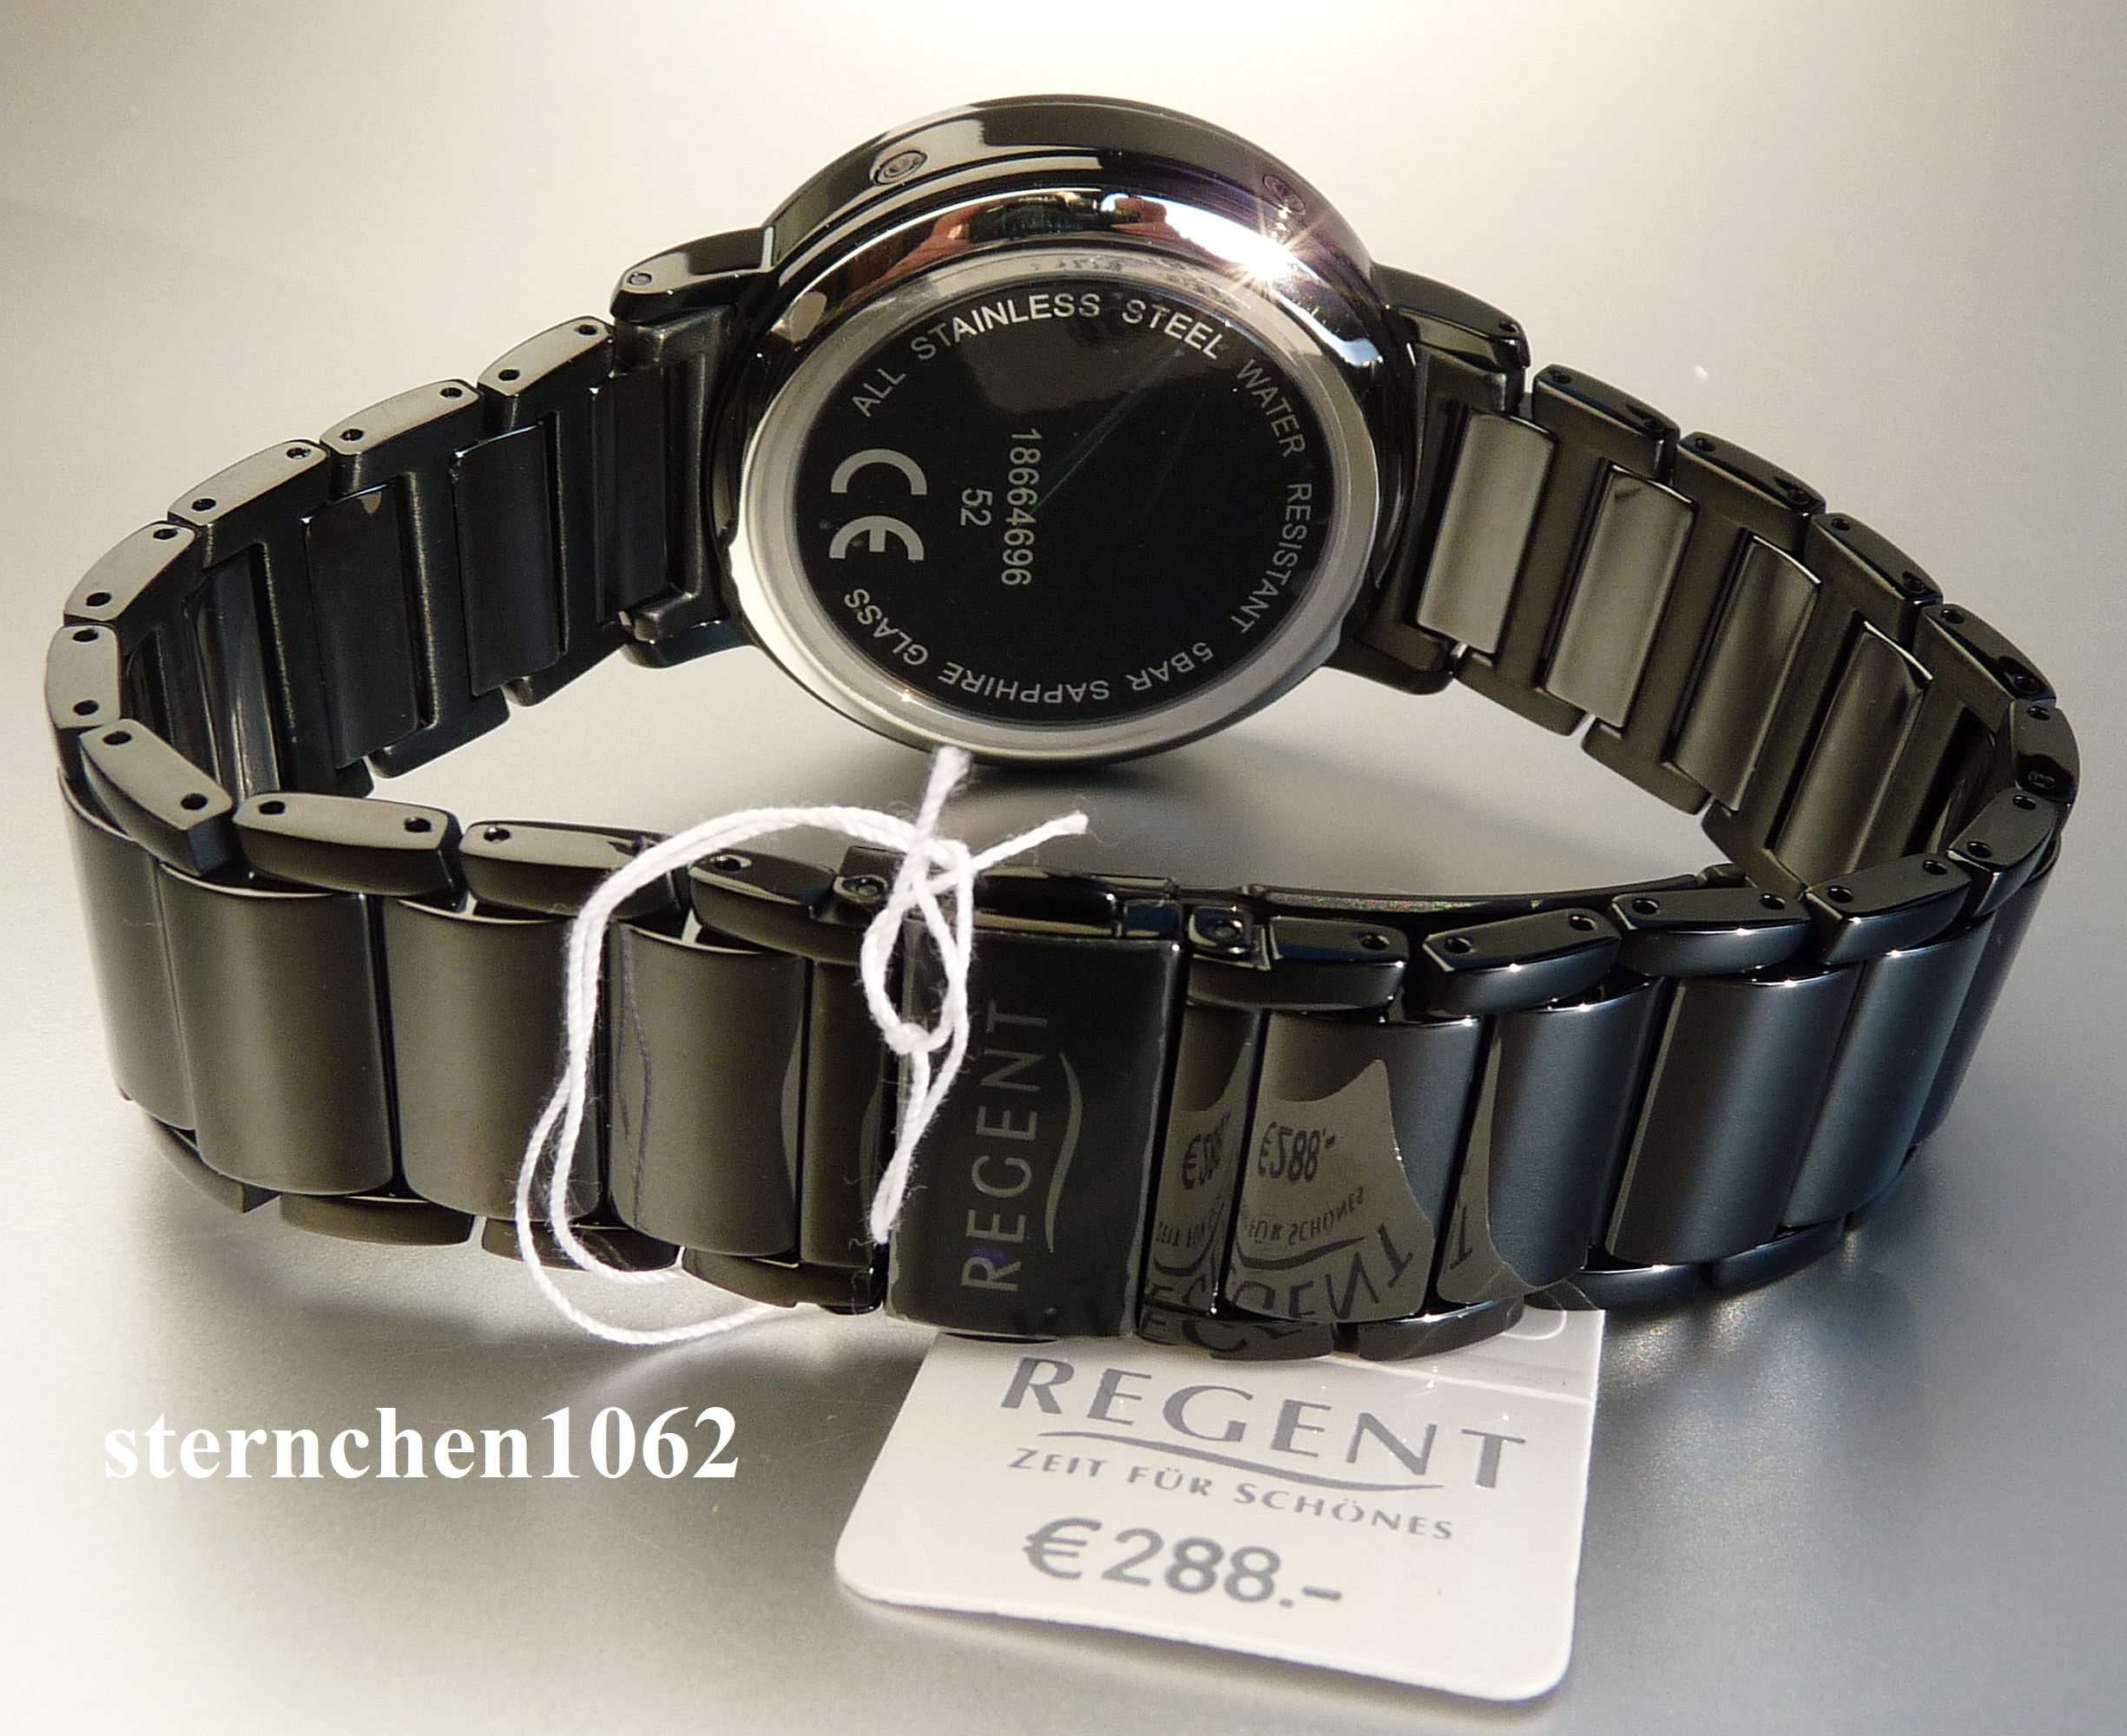 Sternchen 1062 - Regent * Men\'s Steel/Ceramics watch * 11030181/FR255 * 